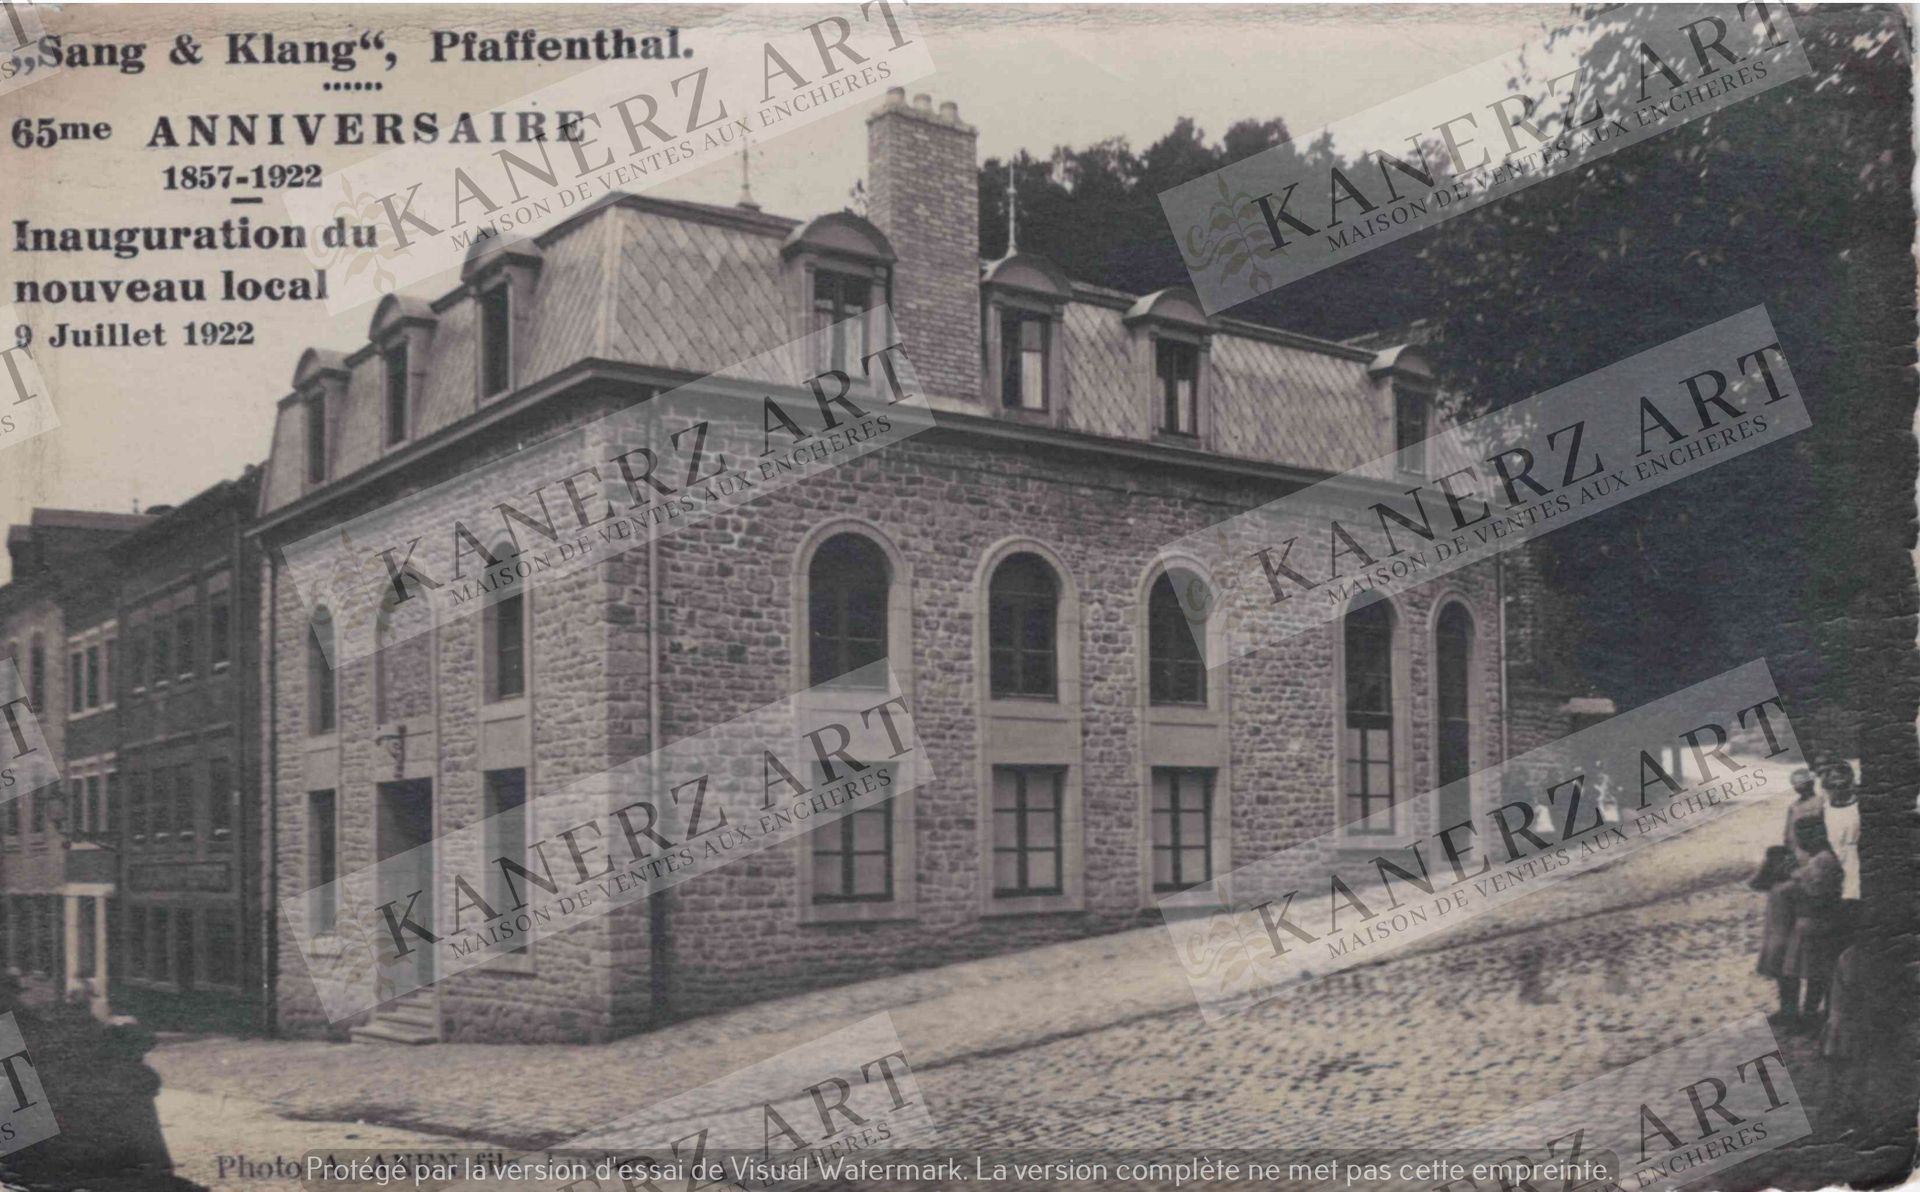 Null (OFFICIEL) Pffafenthal - Carte photo "Sang Klang", 65ème anniversaire 1857-&hellip;